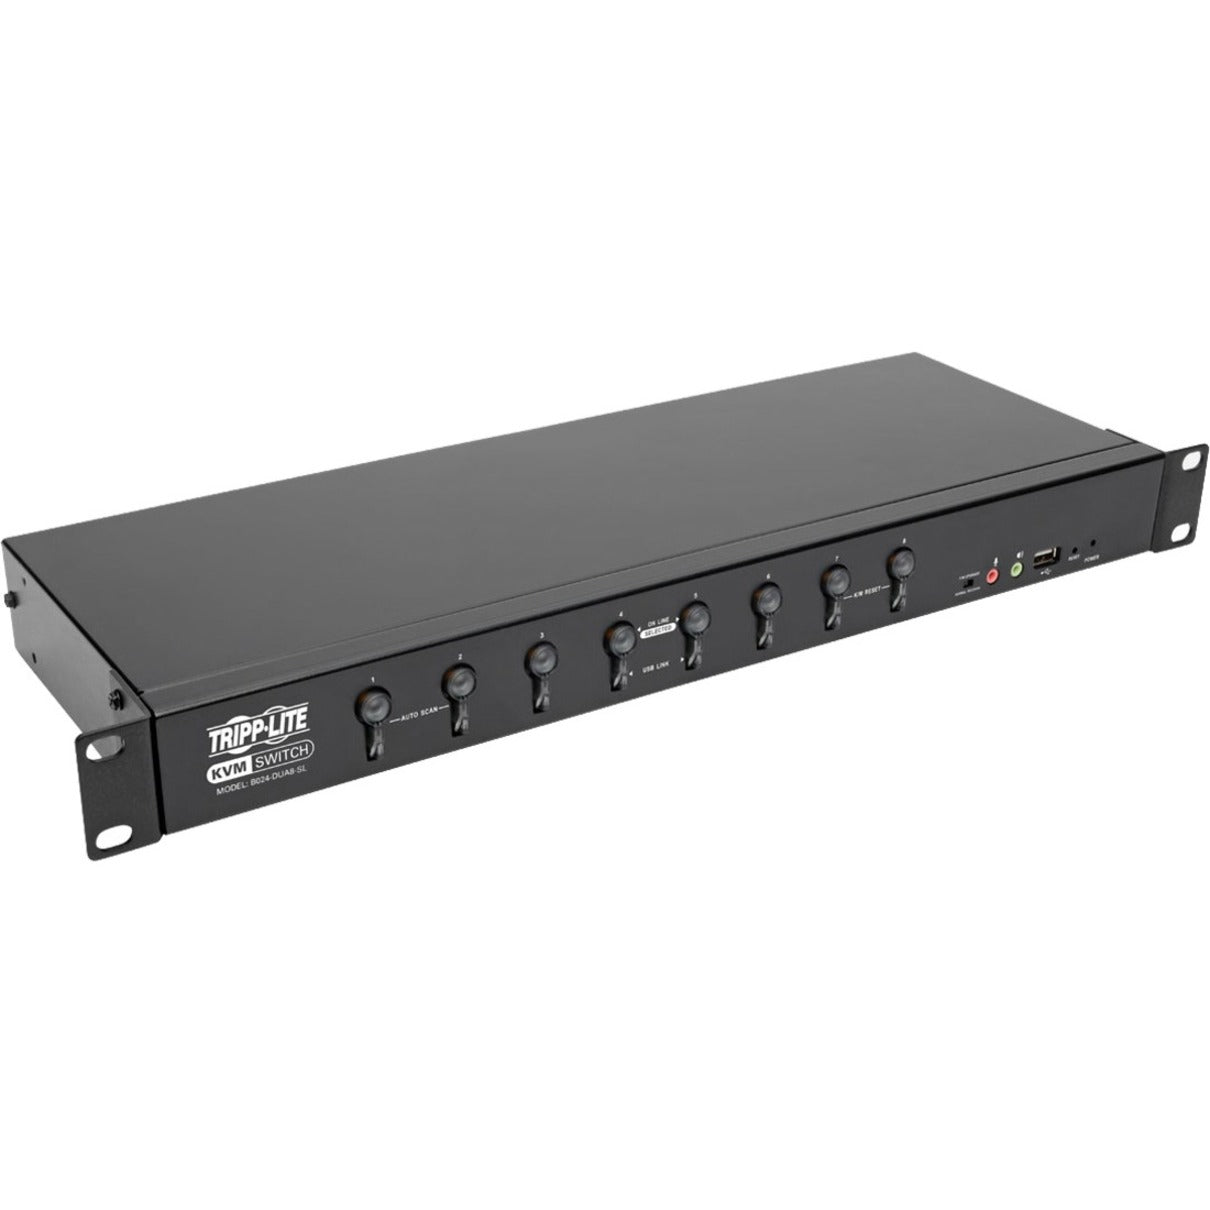 Tripp Lite B024-DUA8-SL DVI/USB 8-Port KVM スイッチ、2048 x 1536 解像度、TAA 準拠、3 年保証